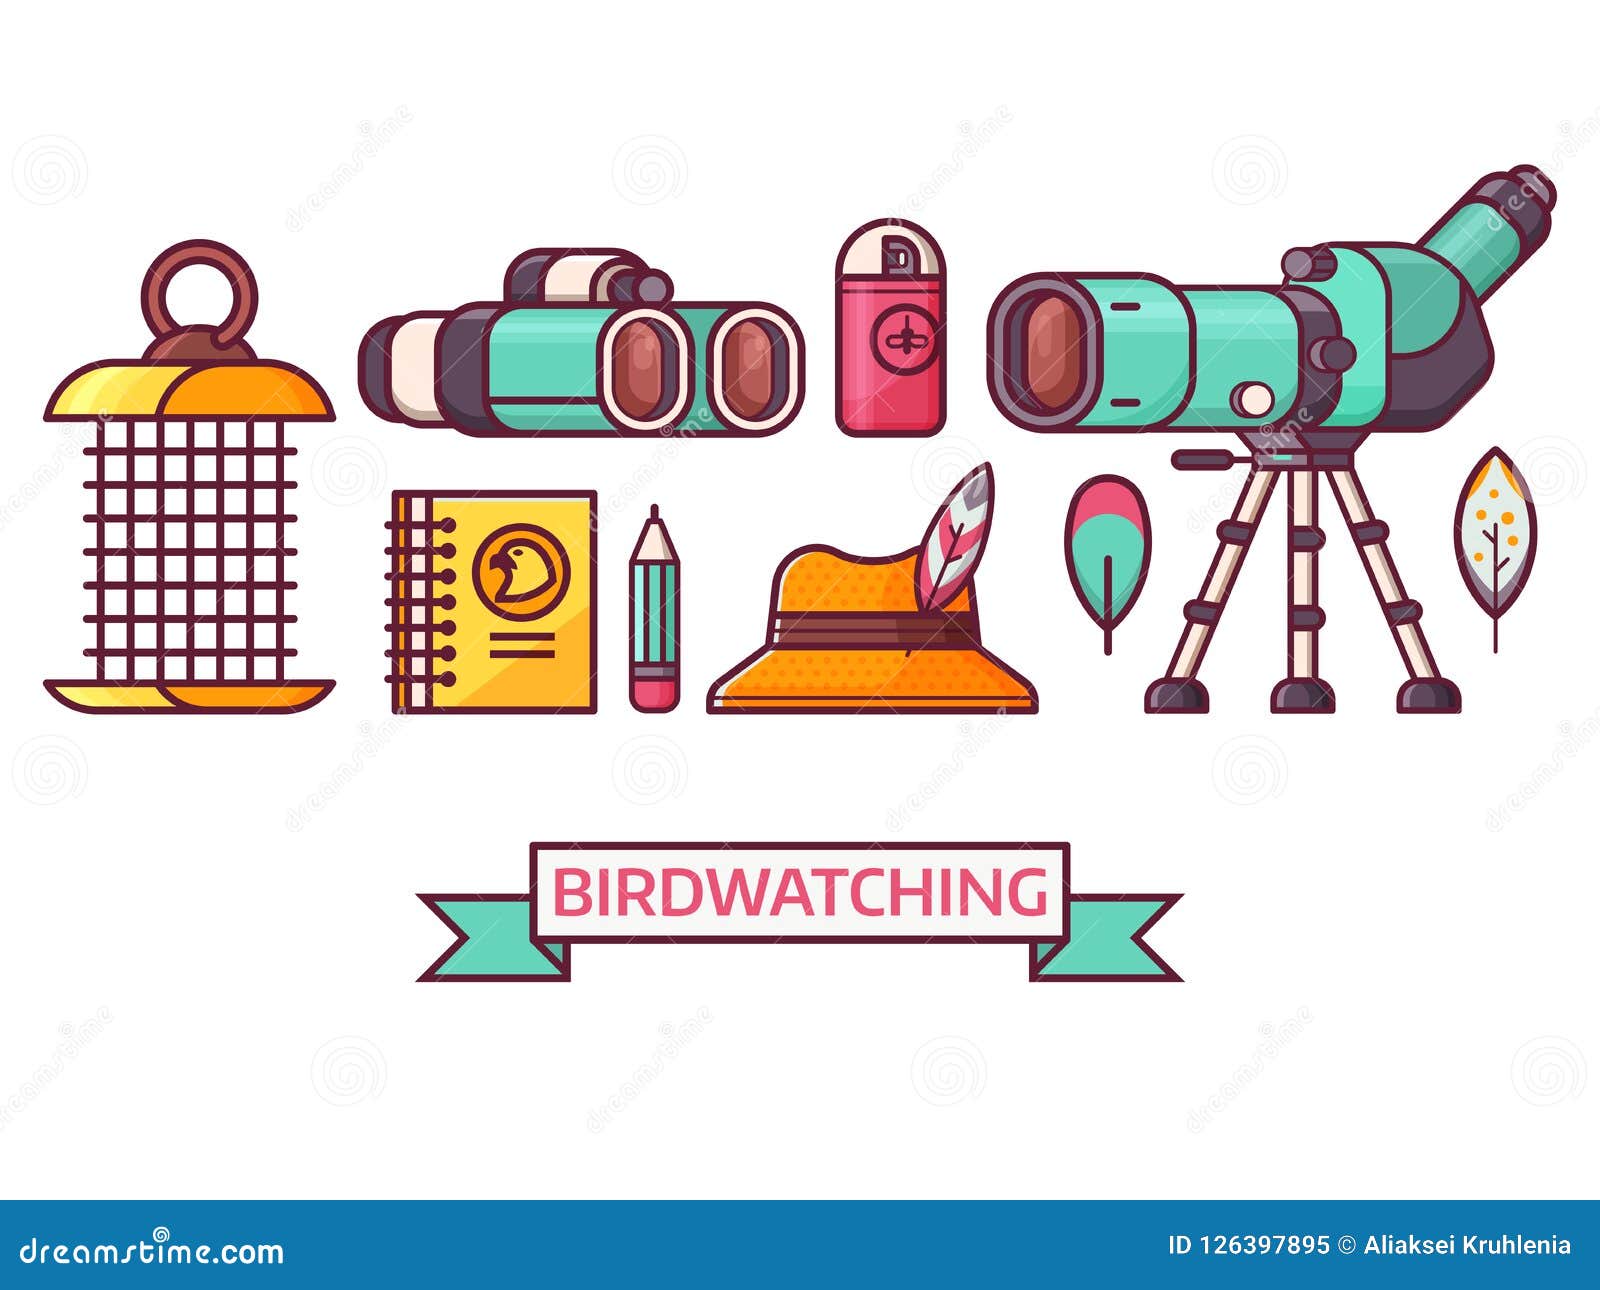 birding and birdwatching ornithology icons